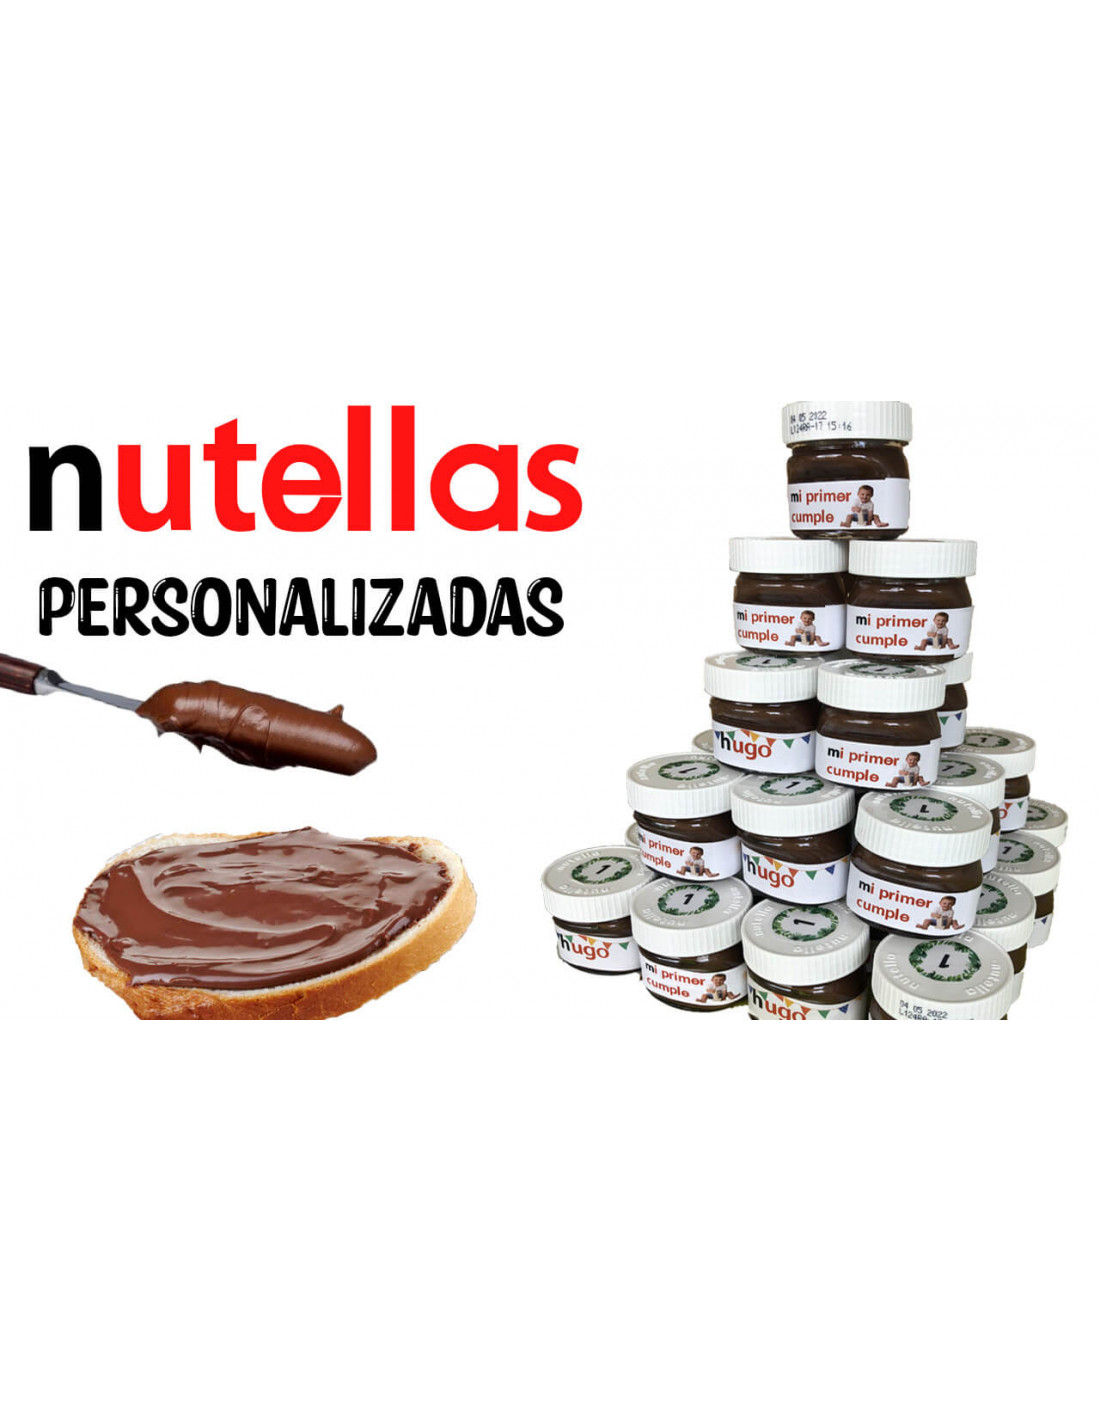 Mini Bote de Nutella con etiqueta personalizada